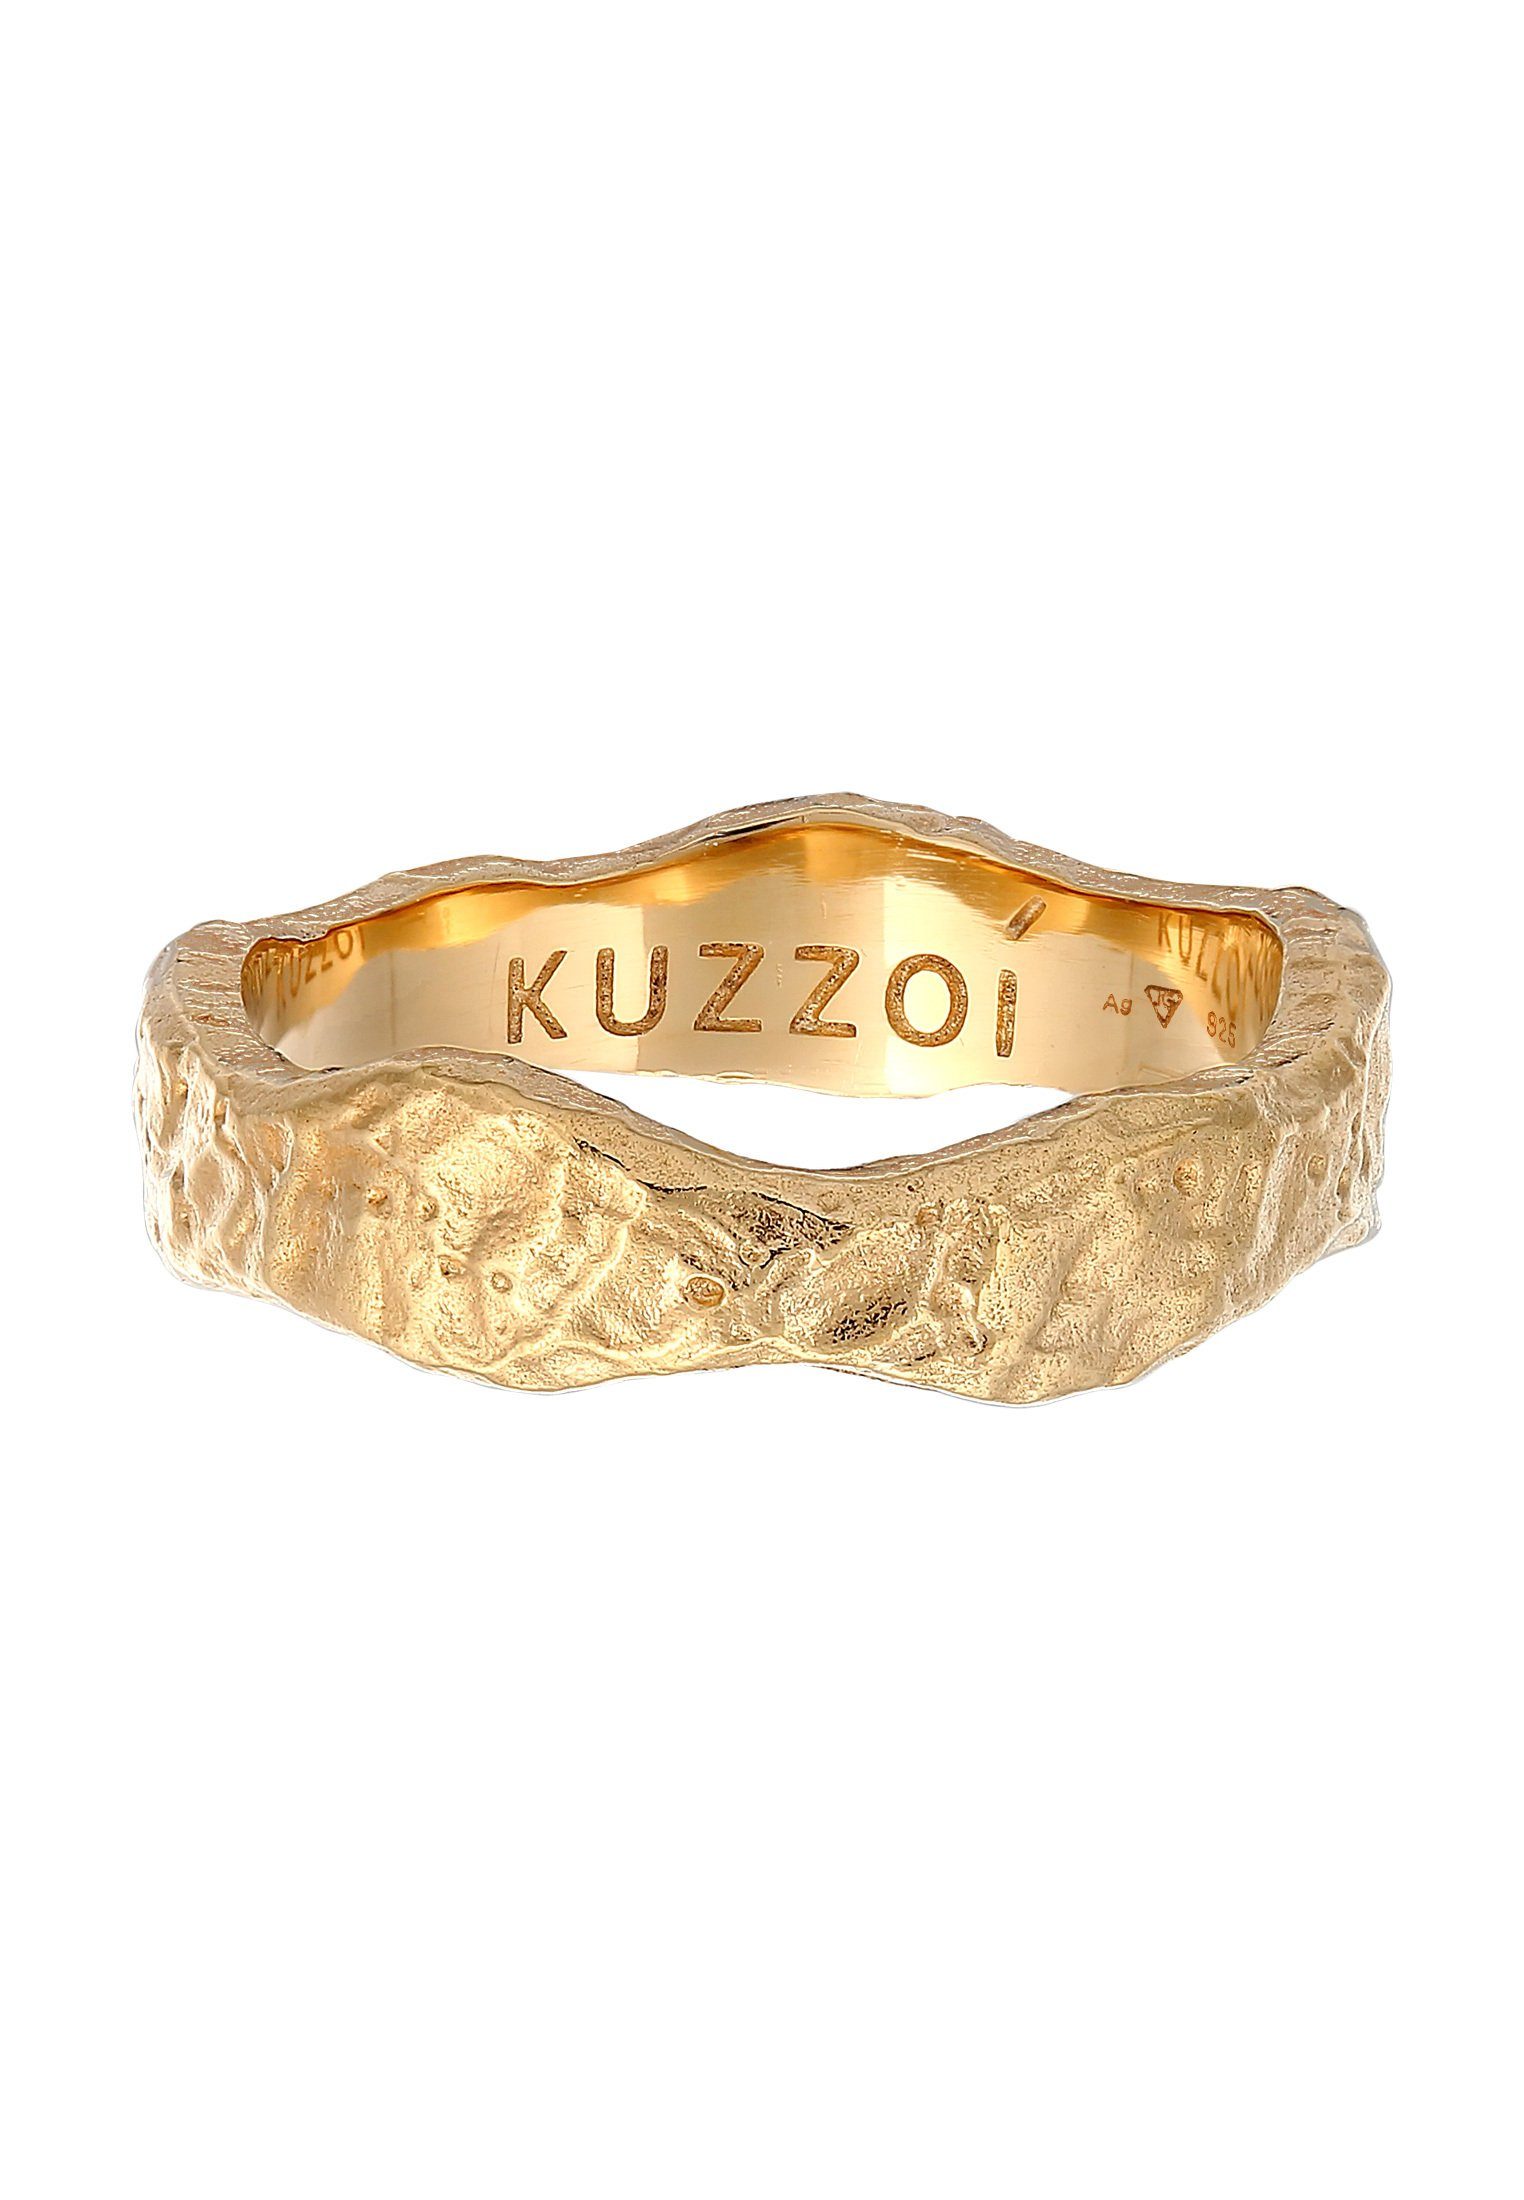 Organic Herren Kuzzoi Silber 925 Bandring Gold Silberring Struktur